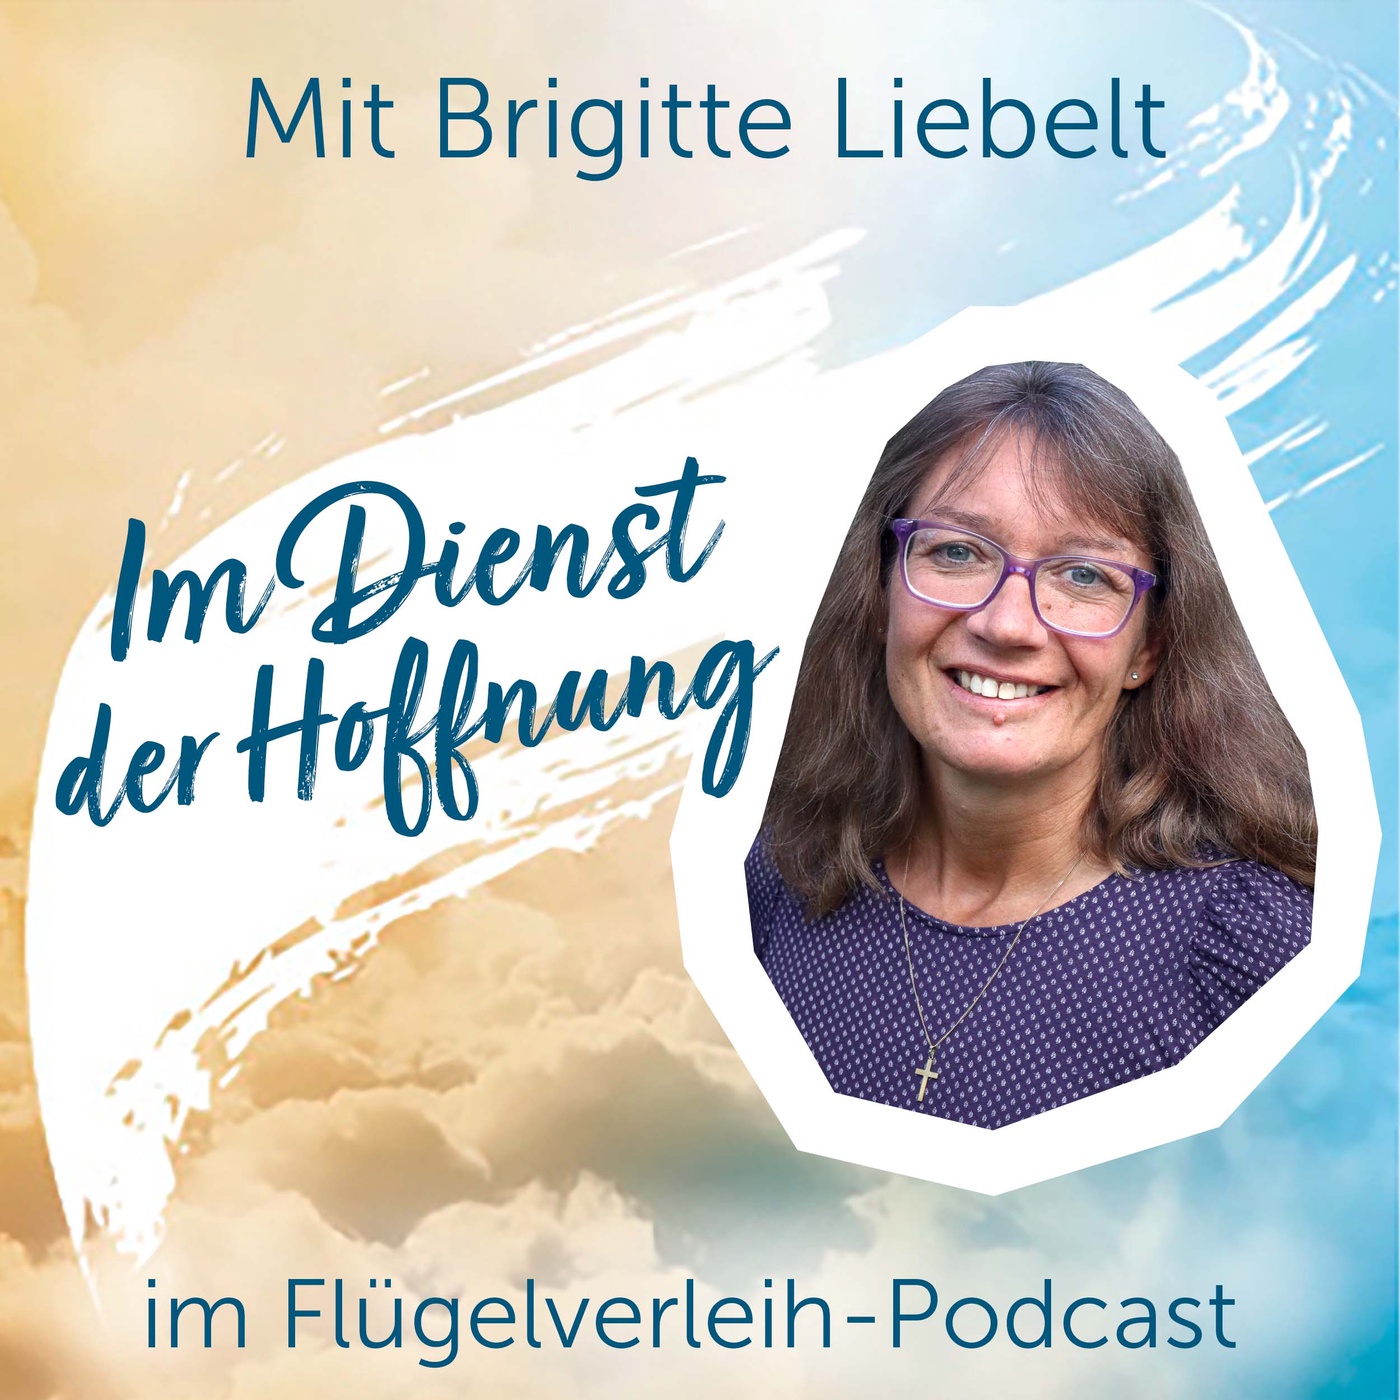 Im Dienst der Hoffnung - mit Brigitte Liebelt